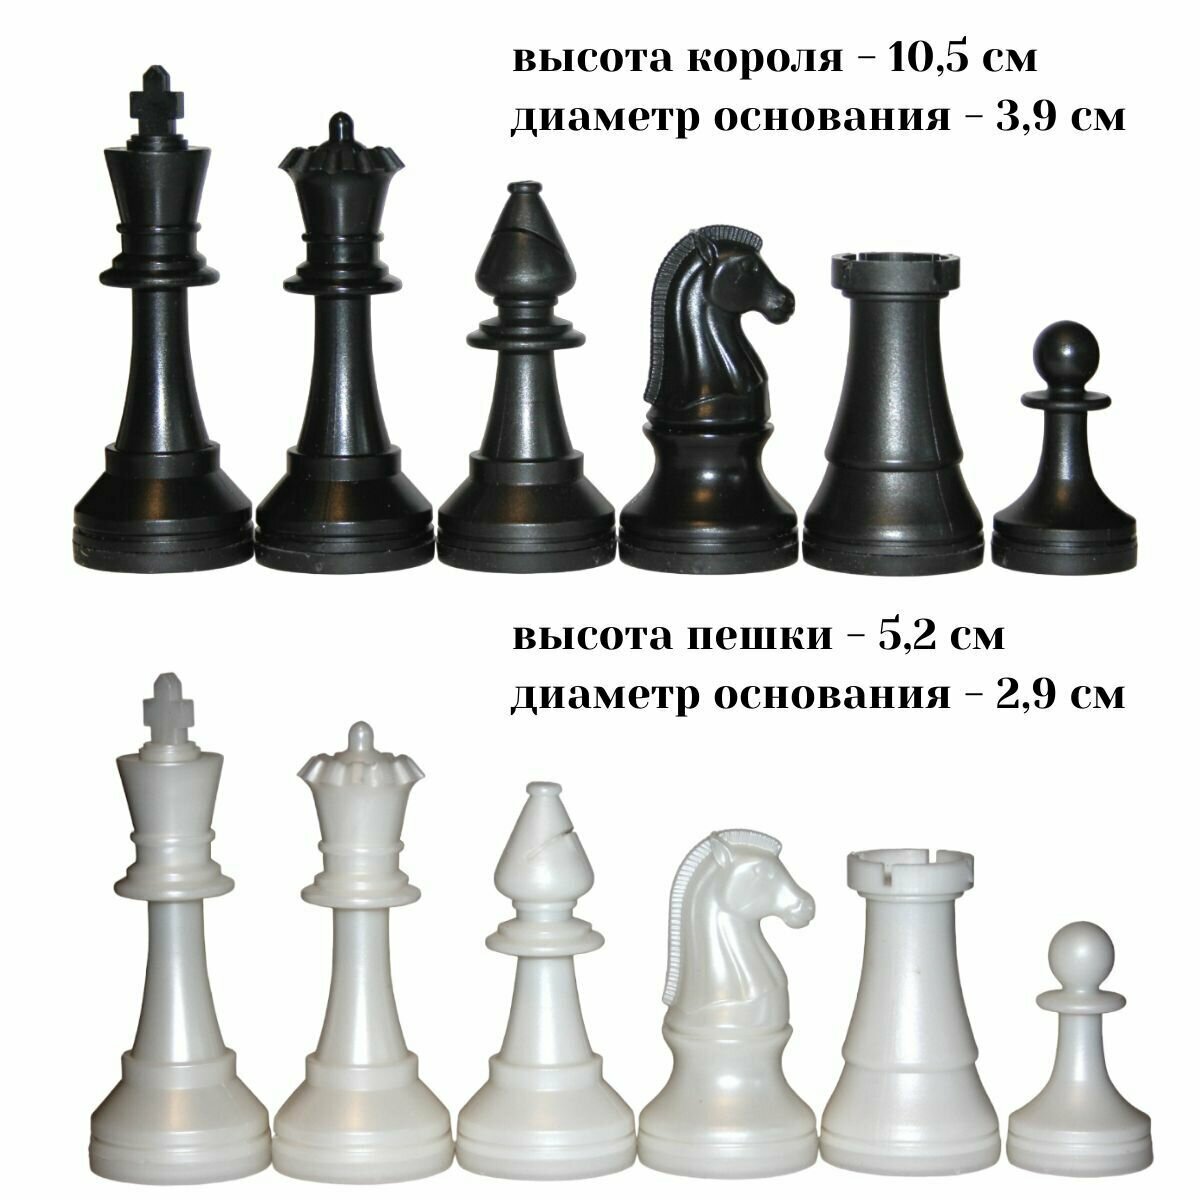 Большие пластиковые шахматные фигуры (без доски). Сделано в России